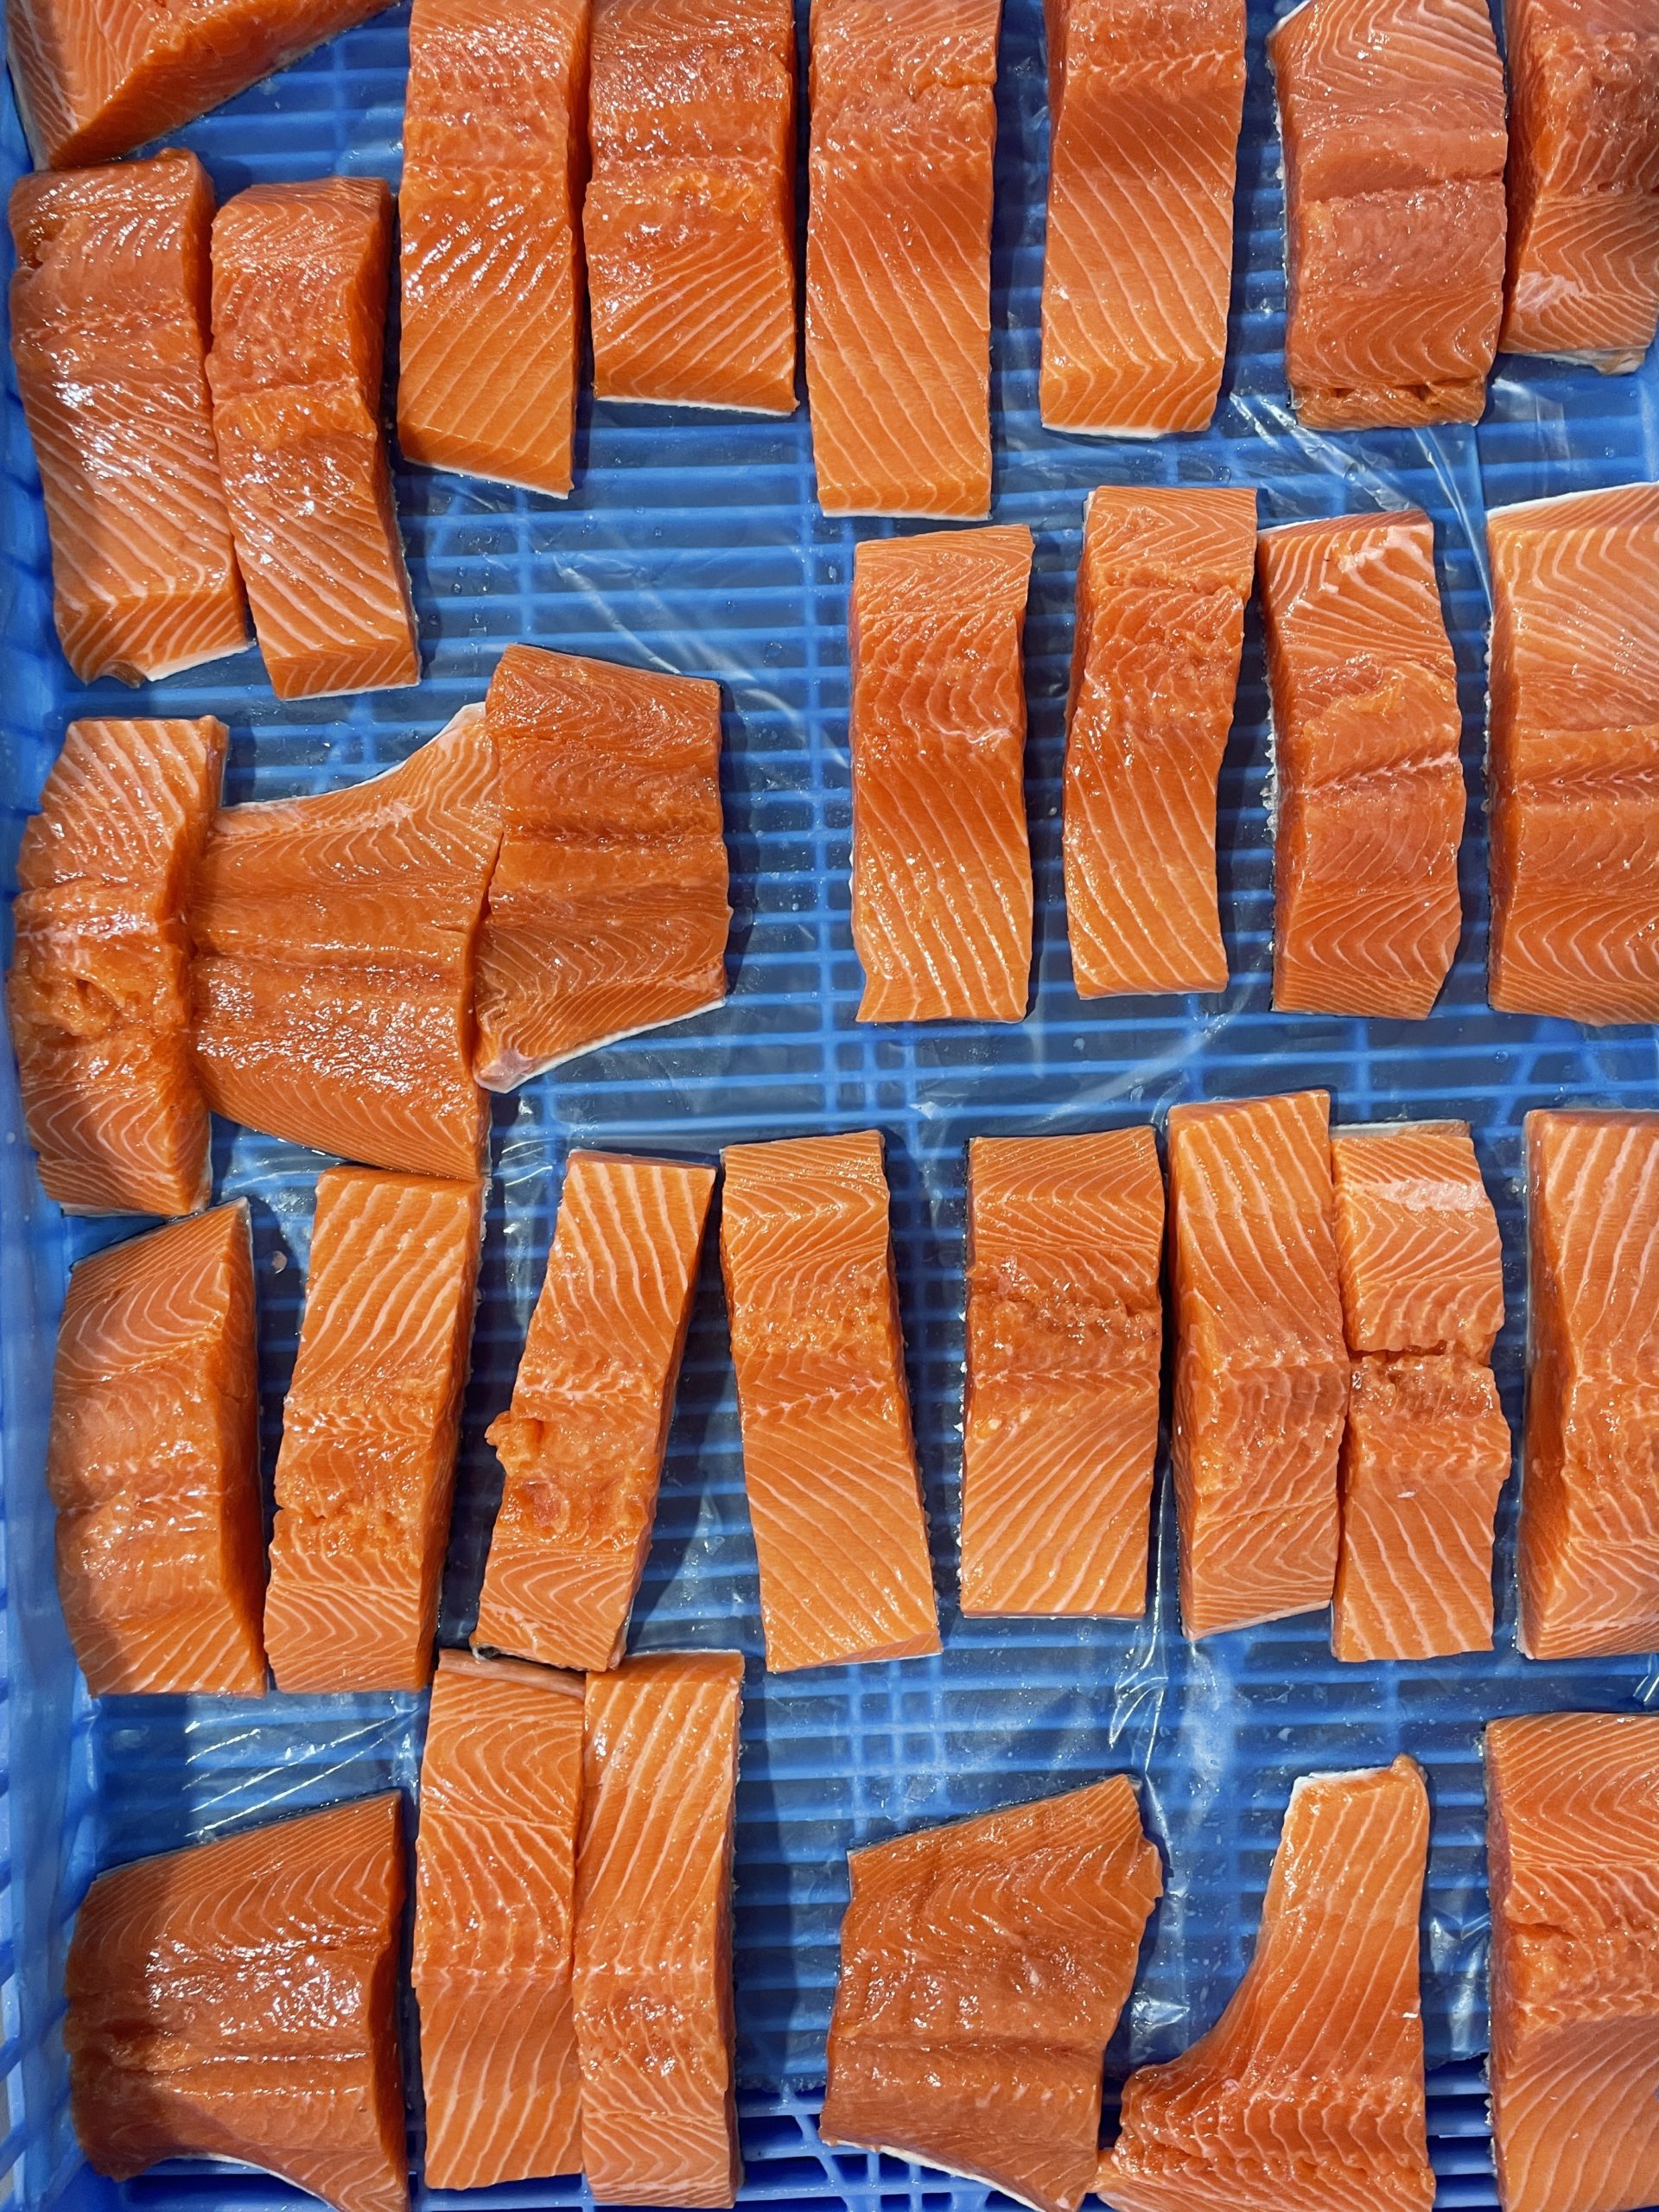 Salmon filets